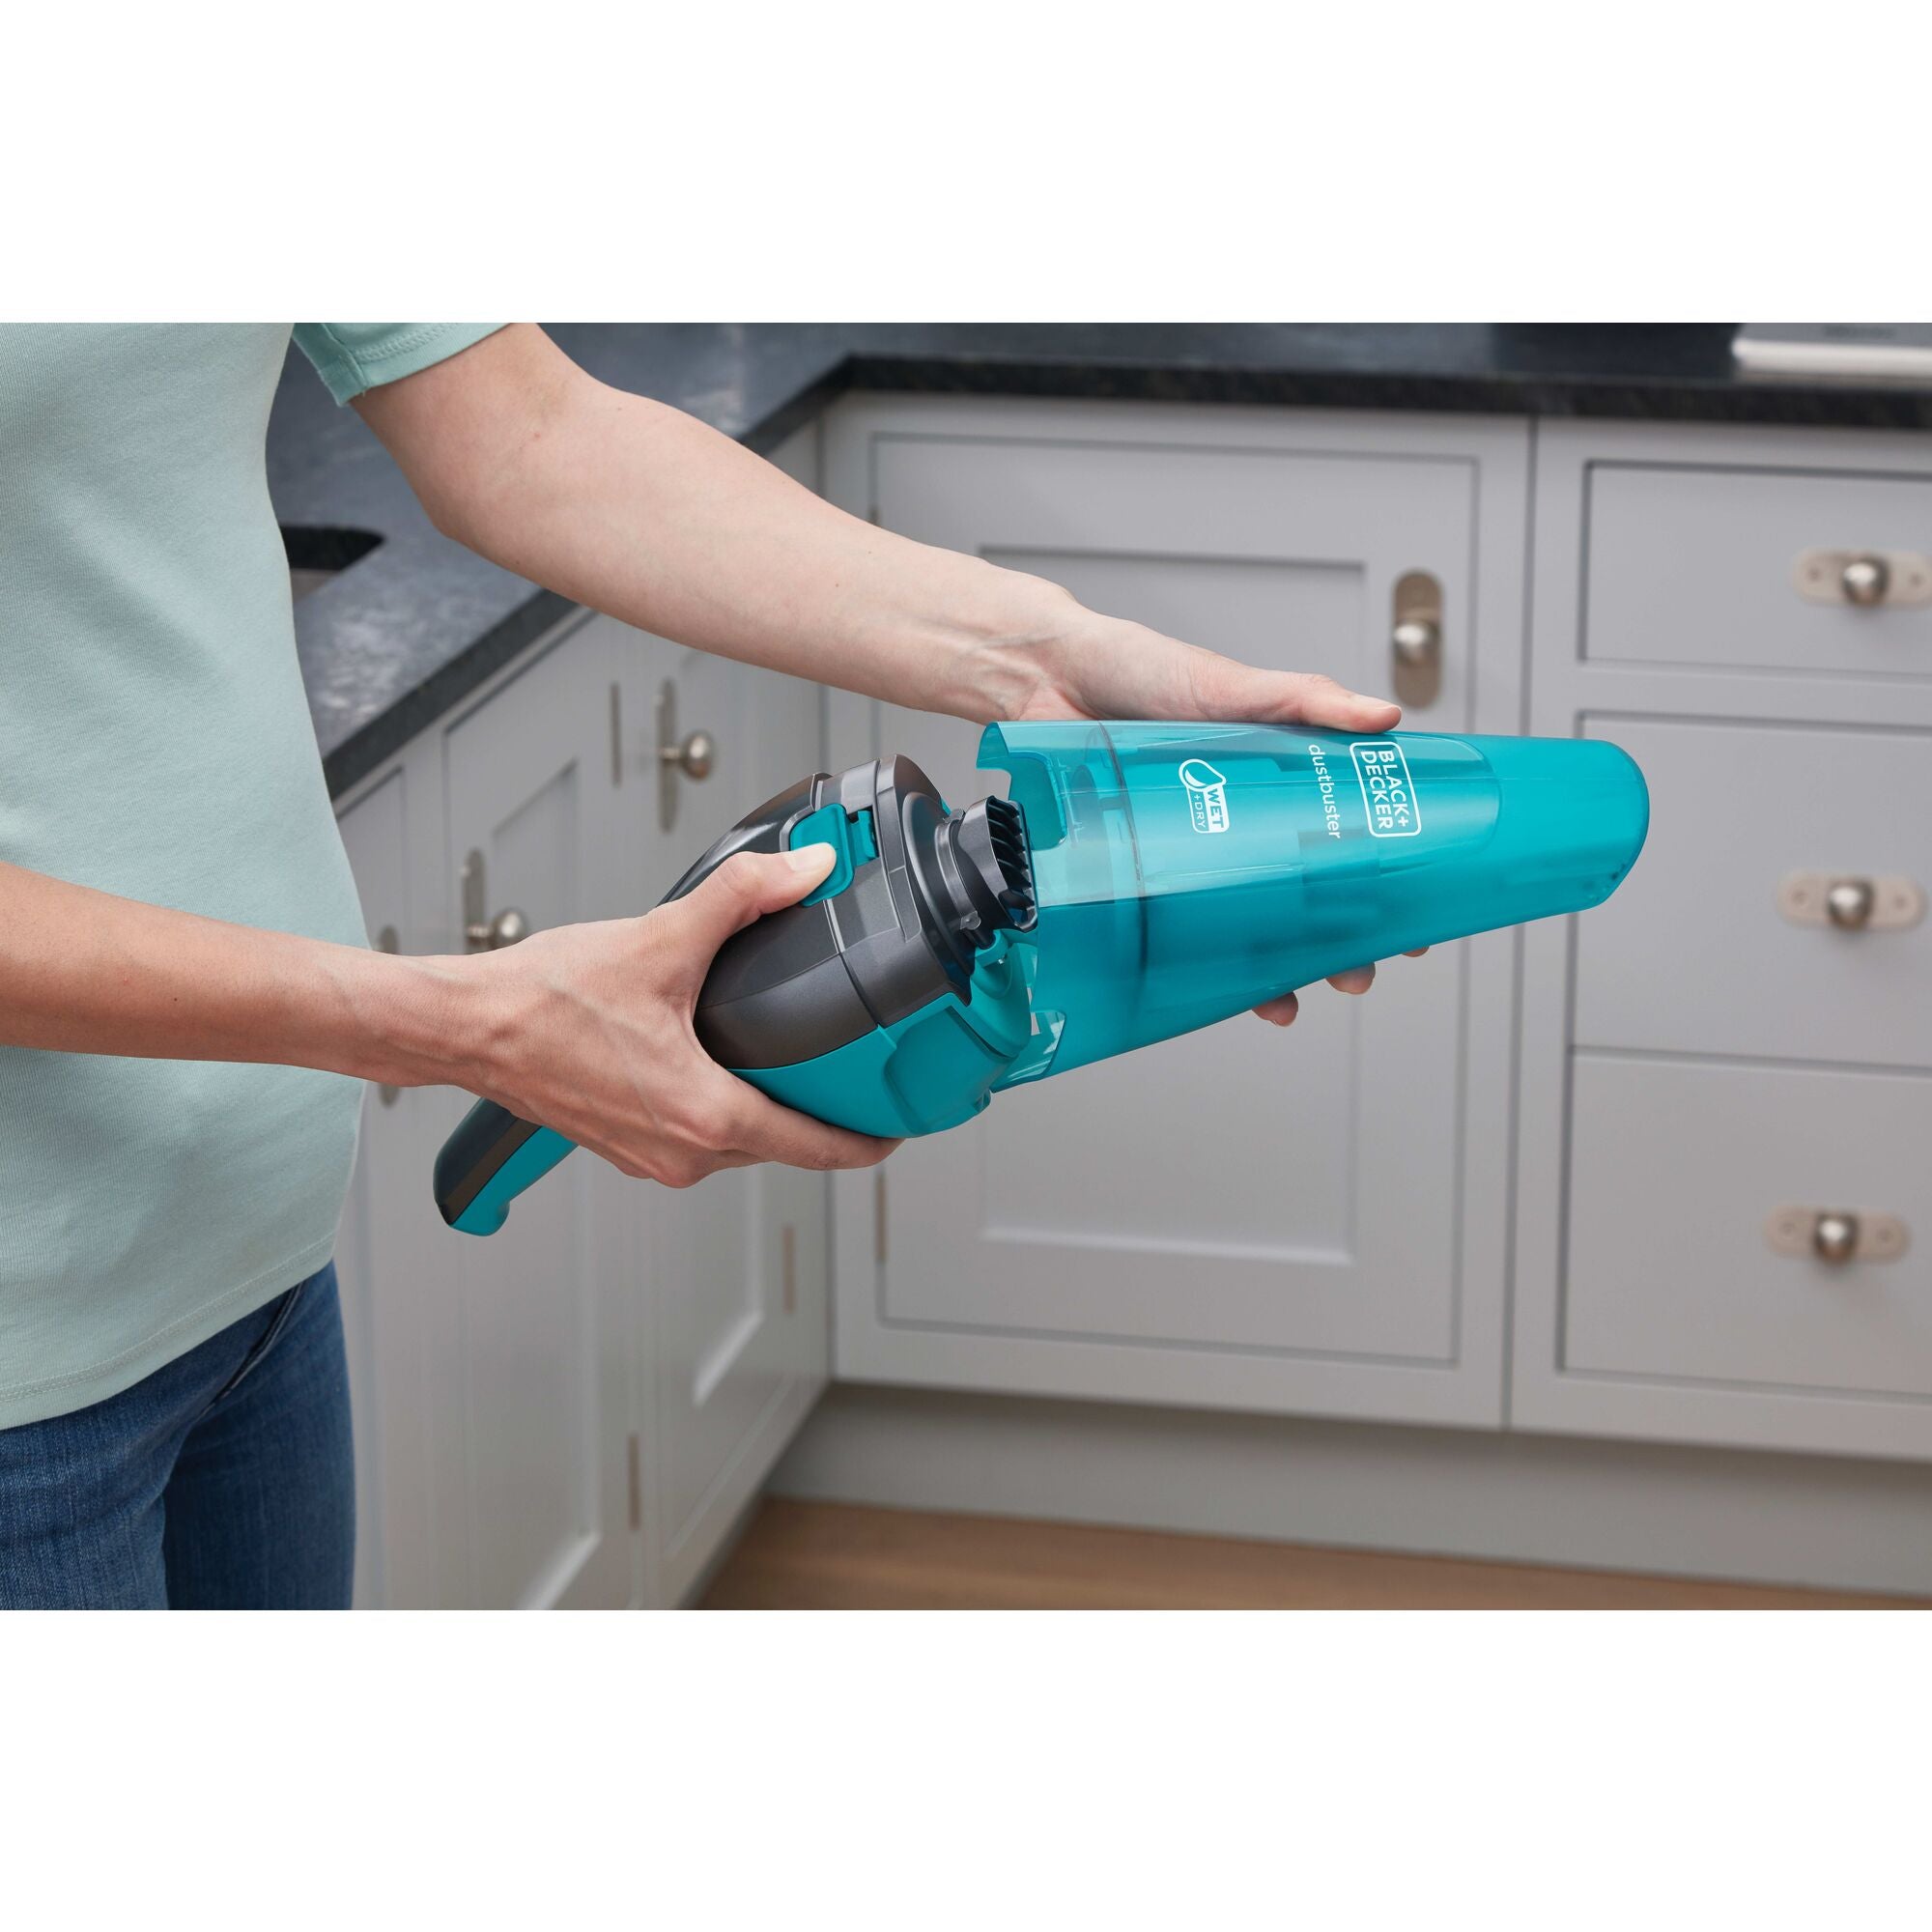 Black+decker Dustbuster Quick Clean Cordless Hand Vacuum